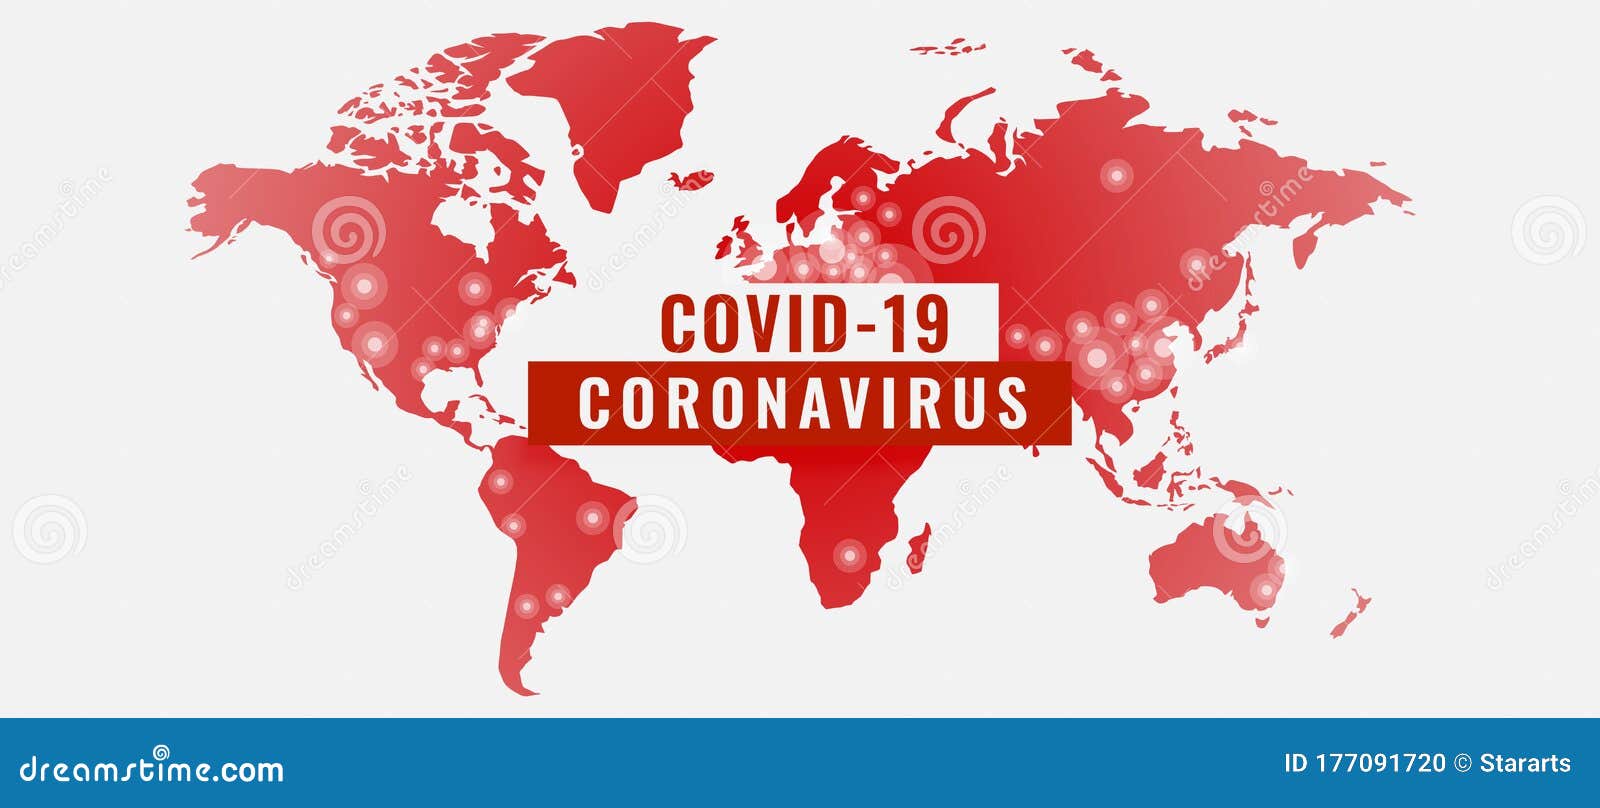 global outburst of coronavirus covid-19 pandemic banner